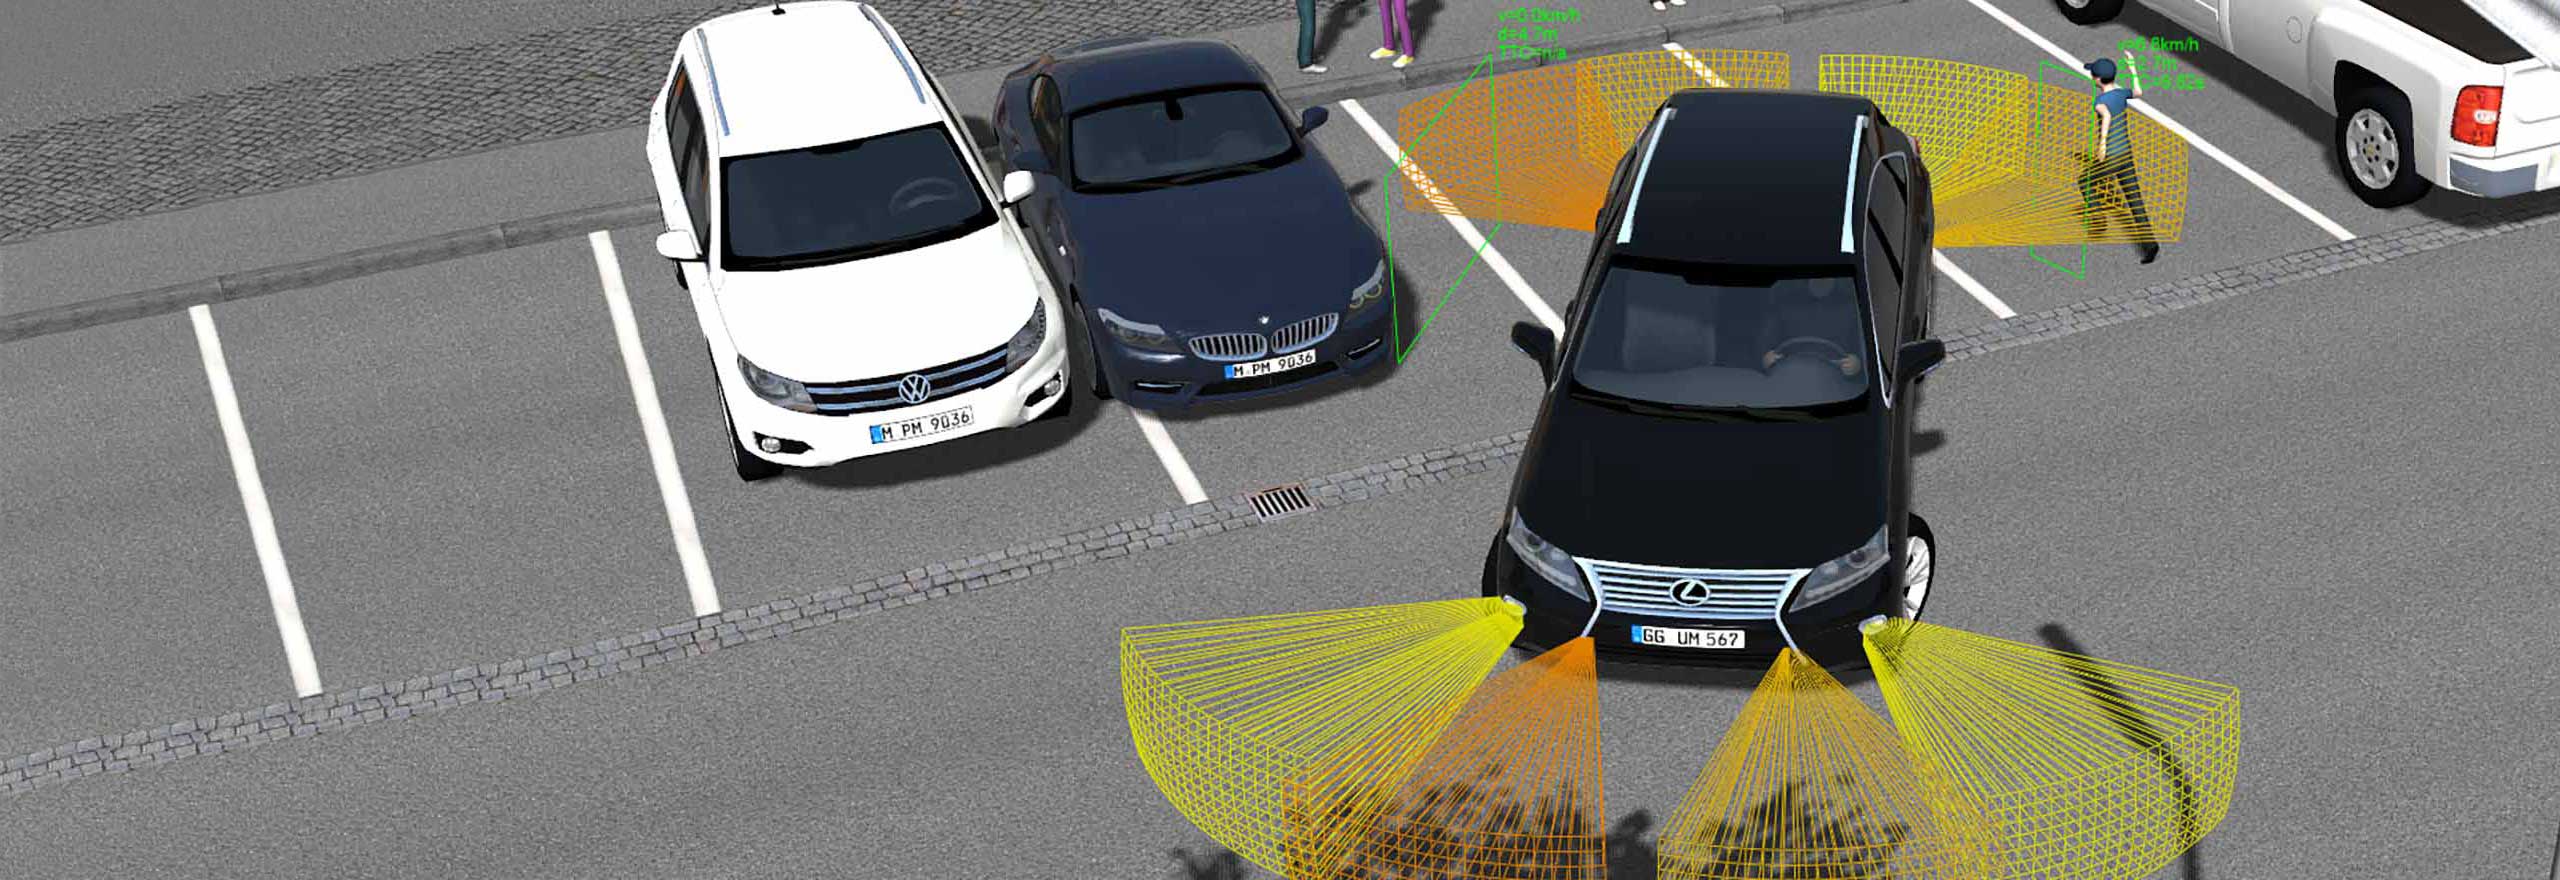 Simulation of a car parking using Hexagon’s autonomous and ADAS simulation software 